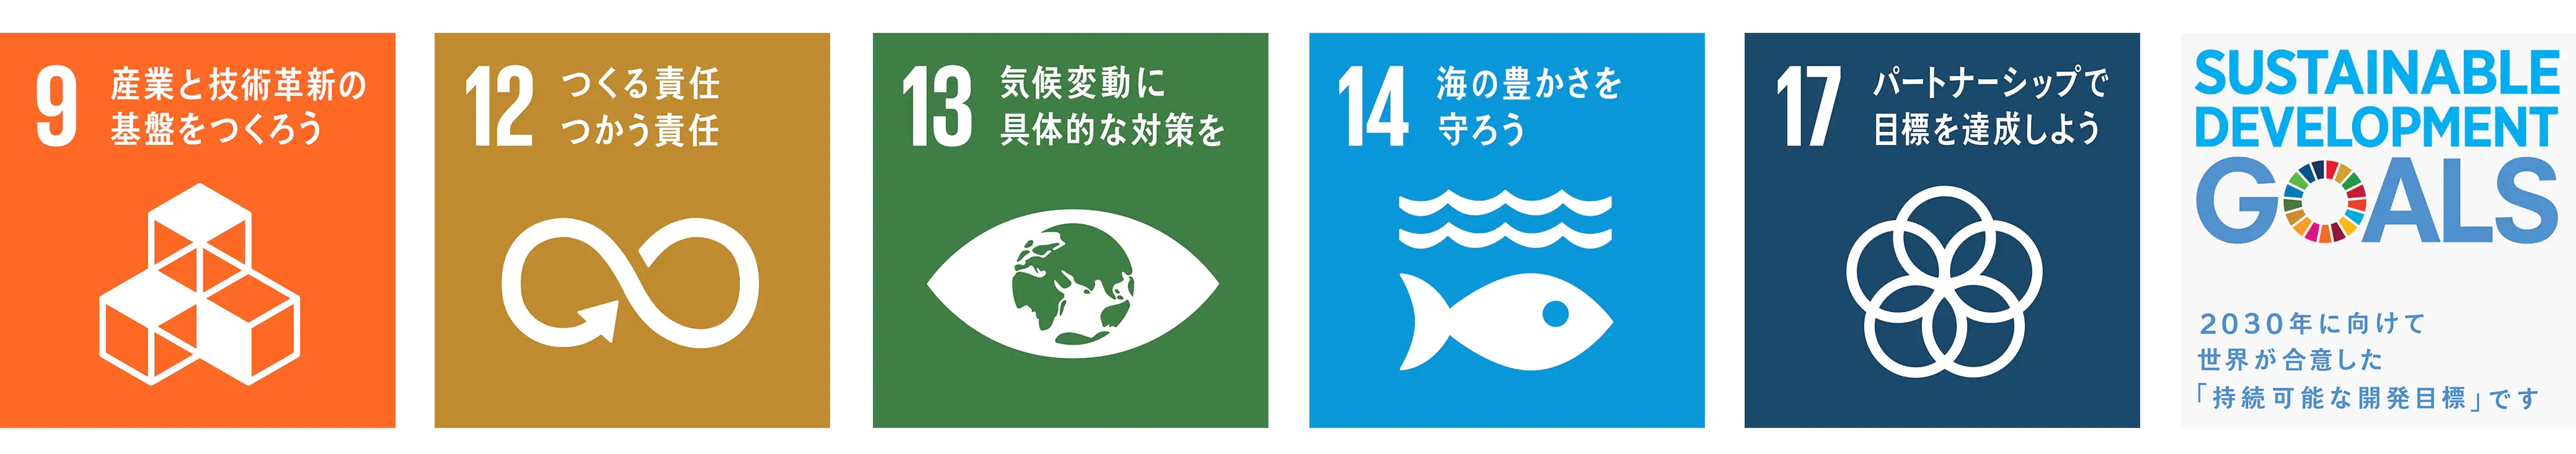 9.産業と技術革新の基盤を作ろう 12.つくる責任 つかう責任 13.気候変動に具体的な対策を 14.海の豊かさを守ろう 17.パートナーシップで目標を達成しよう SUSTAINABLE DEVELOPMENT GOALS 2030年に向けて世界が合意した「持続可能な開発目標」です